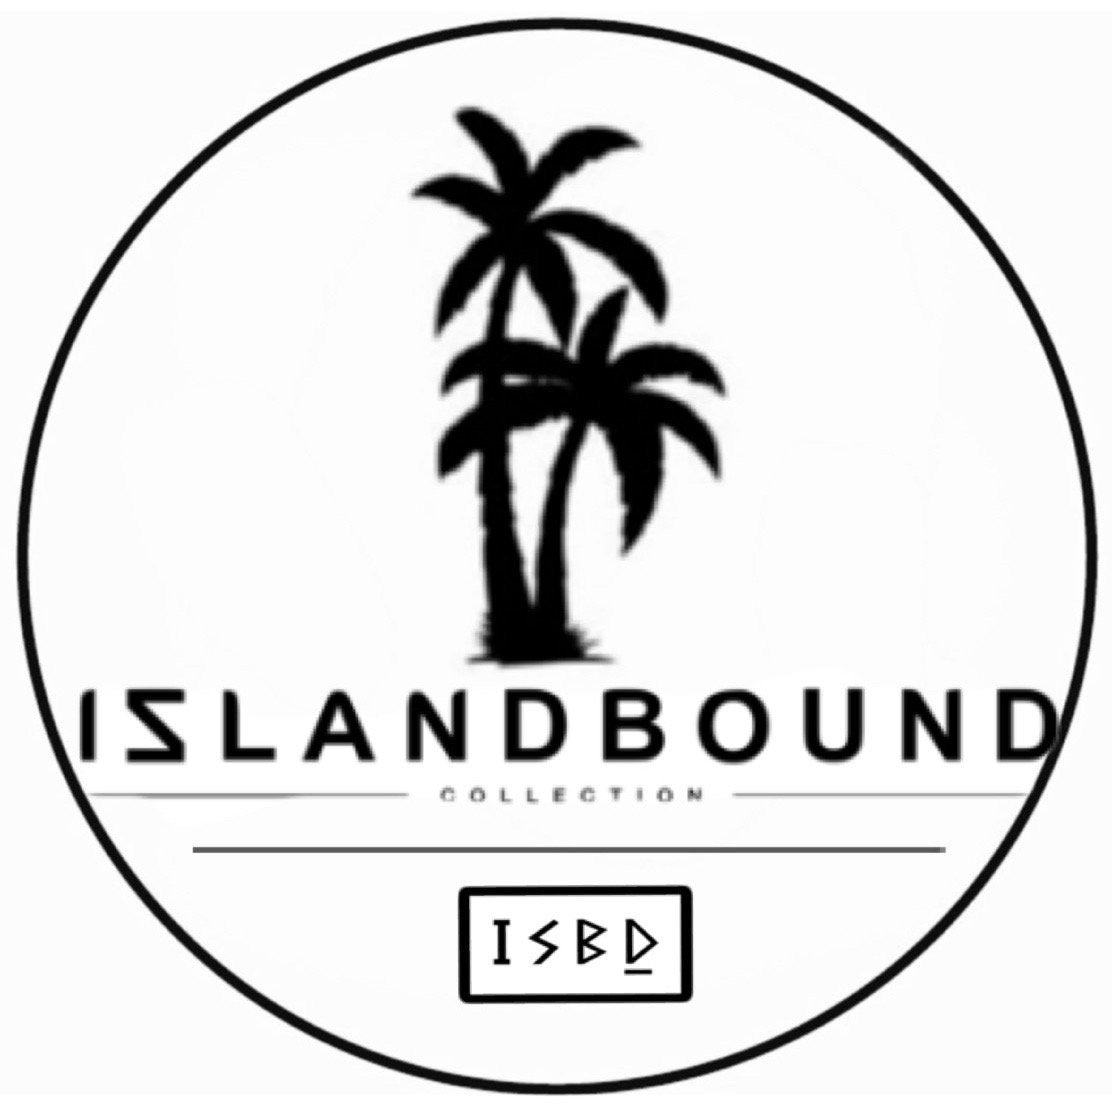 Islandbound stickers